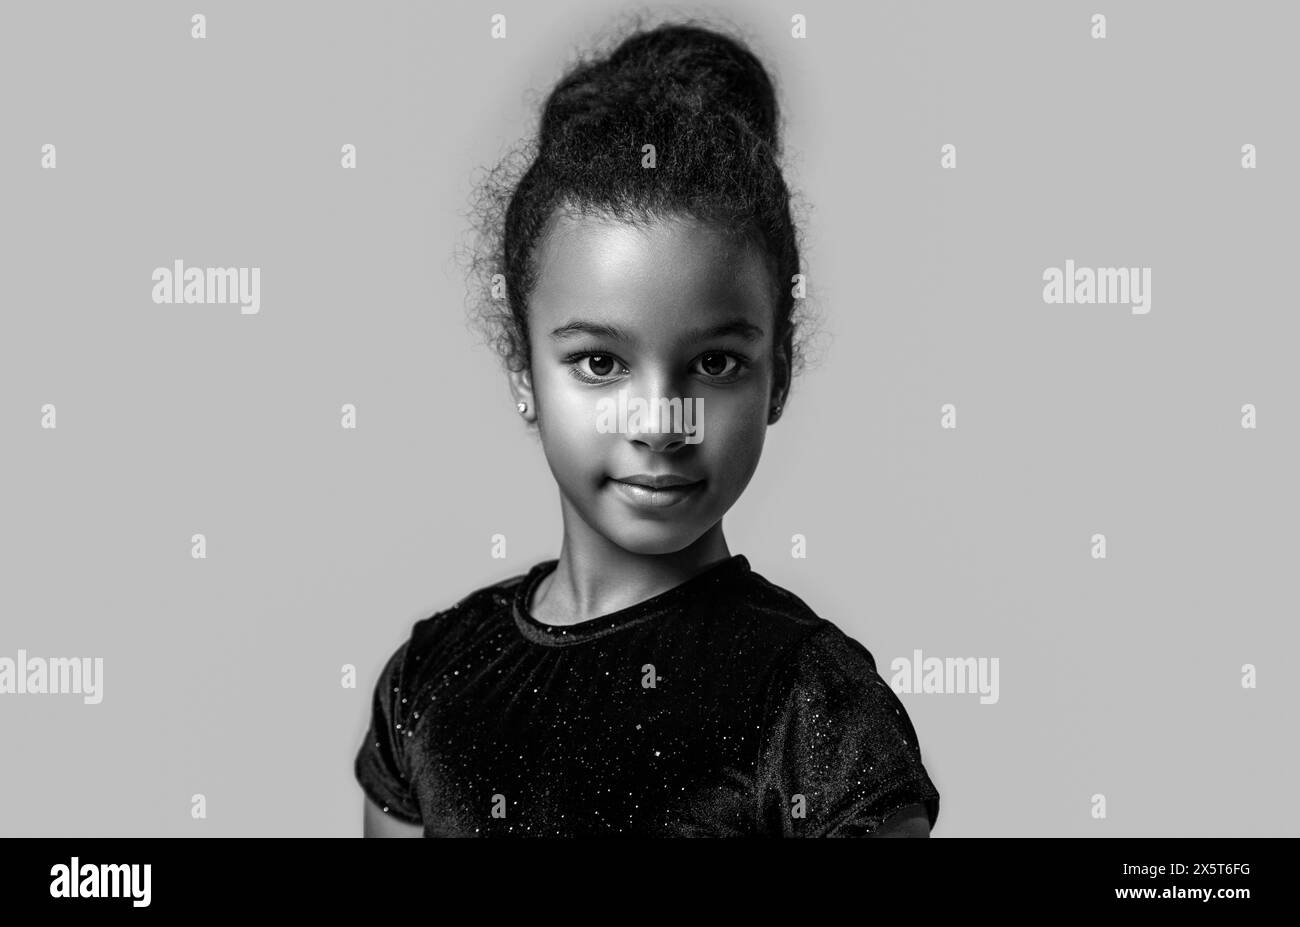 Lächeln Sie das kleine afrikanische Mädchen. Amerikanisches Mädchen Lächeln und lockiges Haar. Schwarz-weiß. Stockfoto